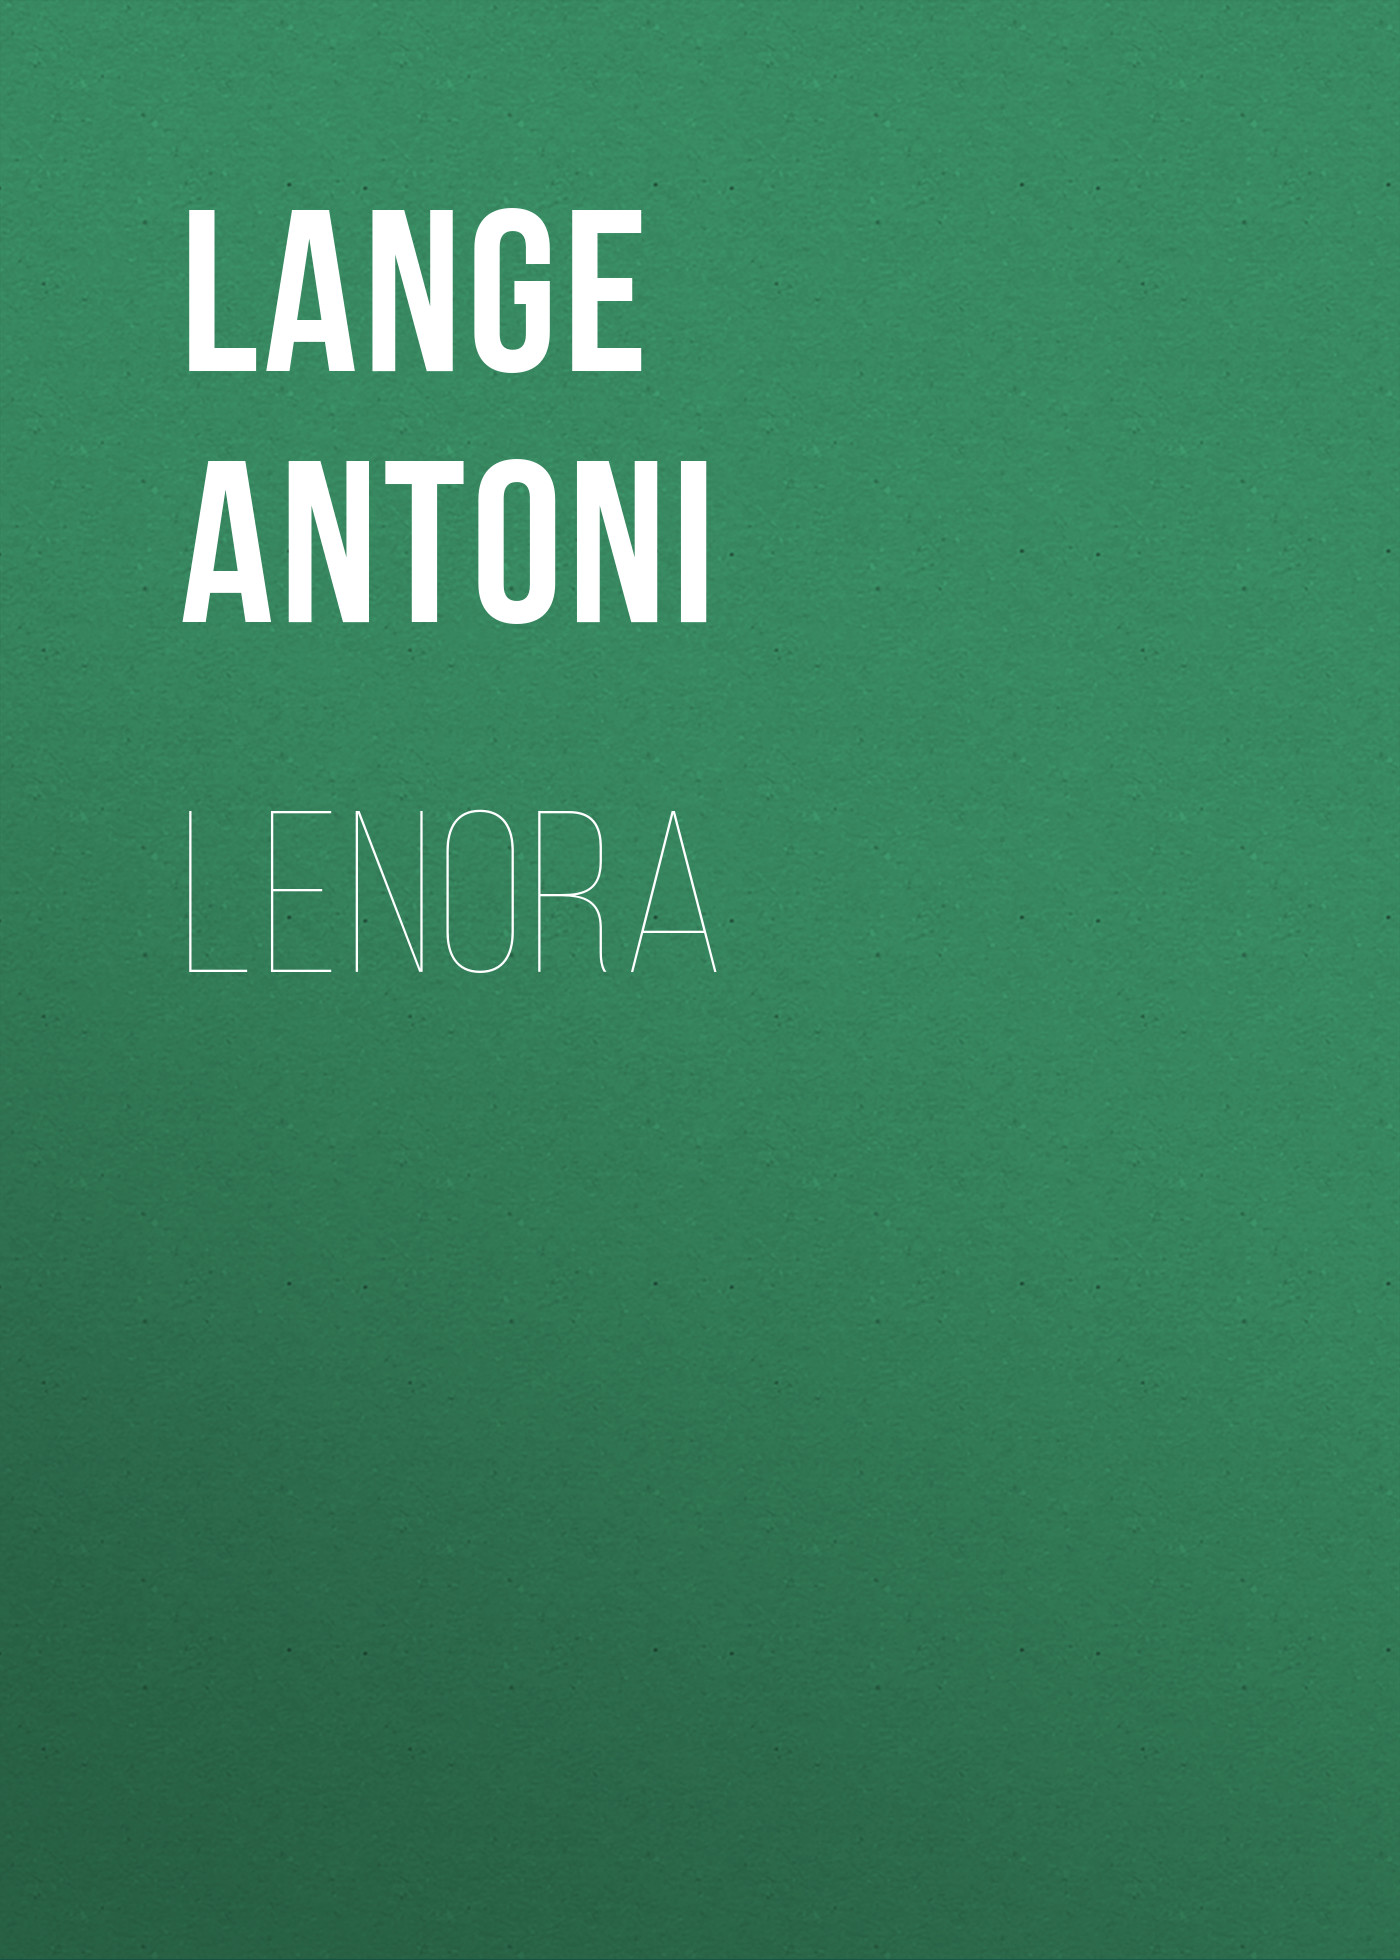 Скачать Lenora - Lange Antoni